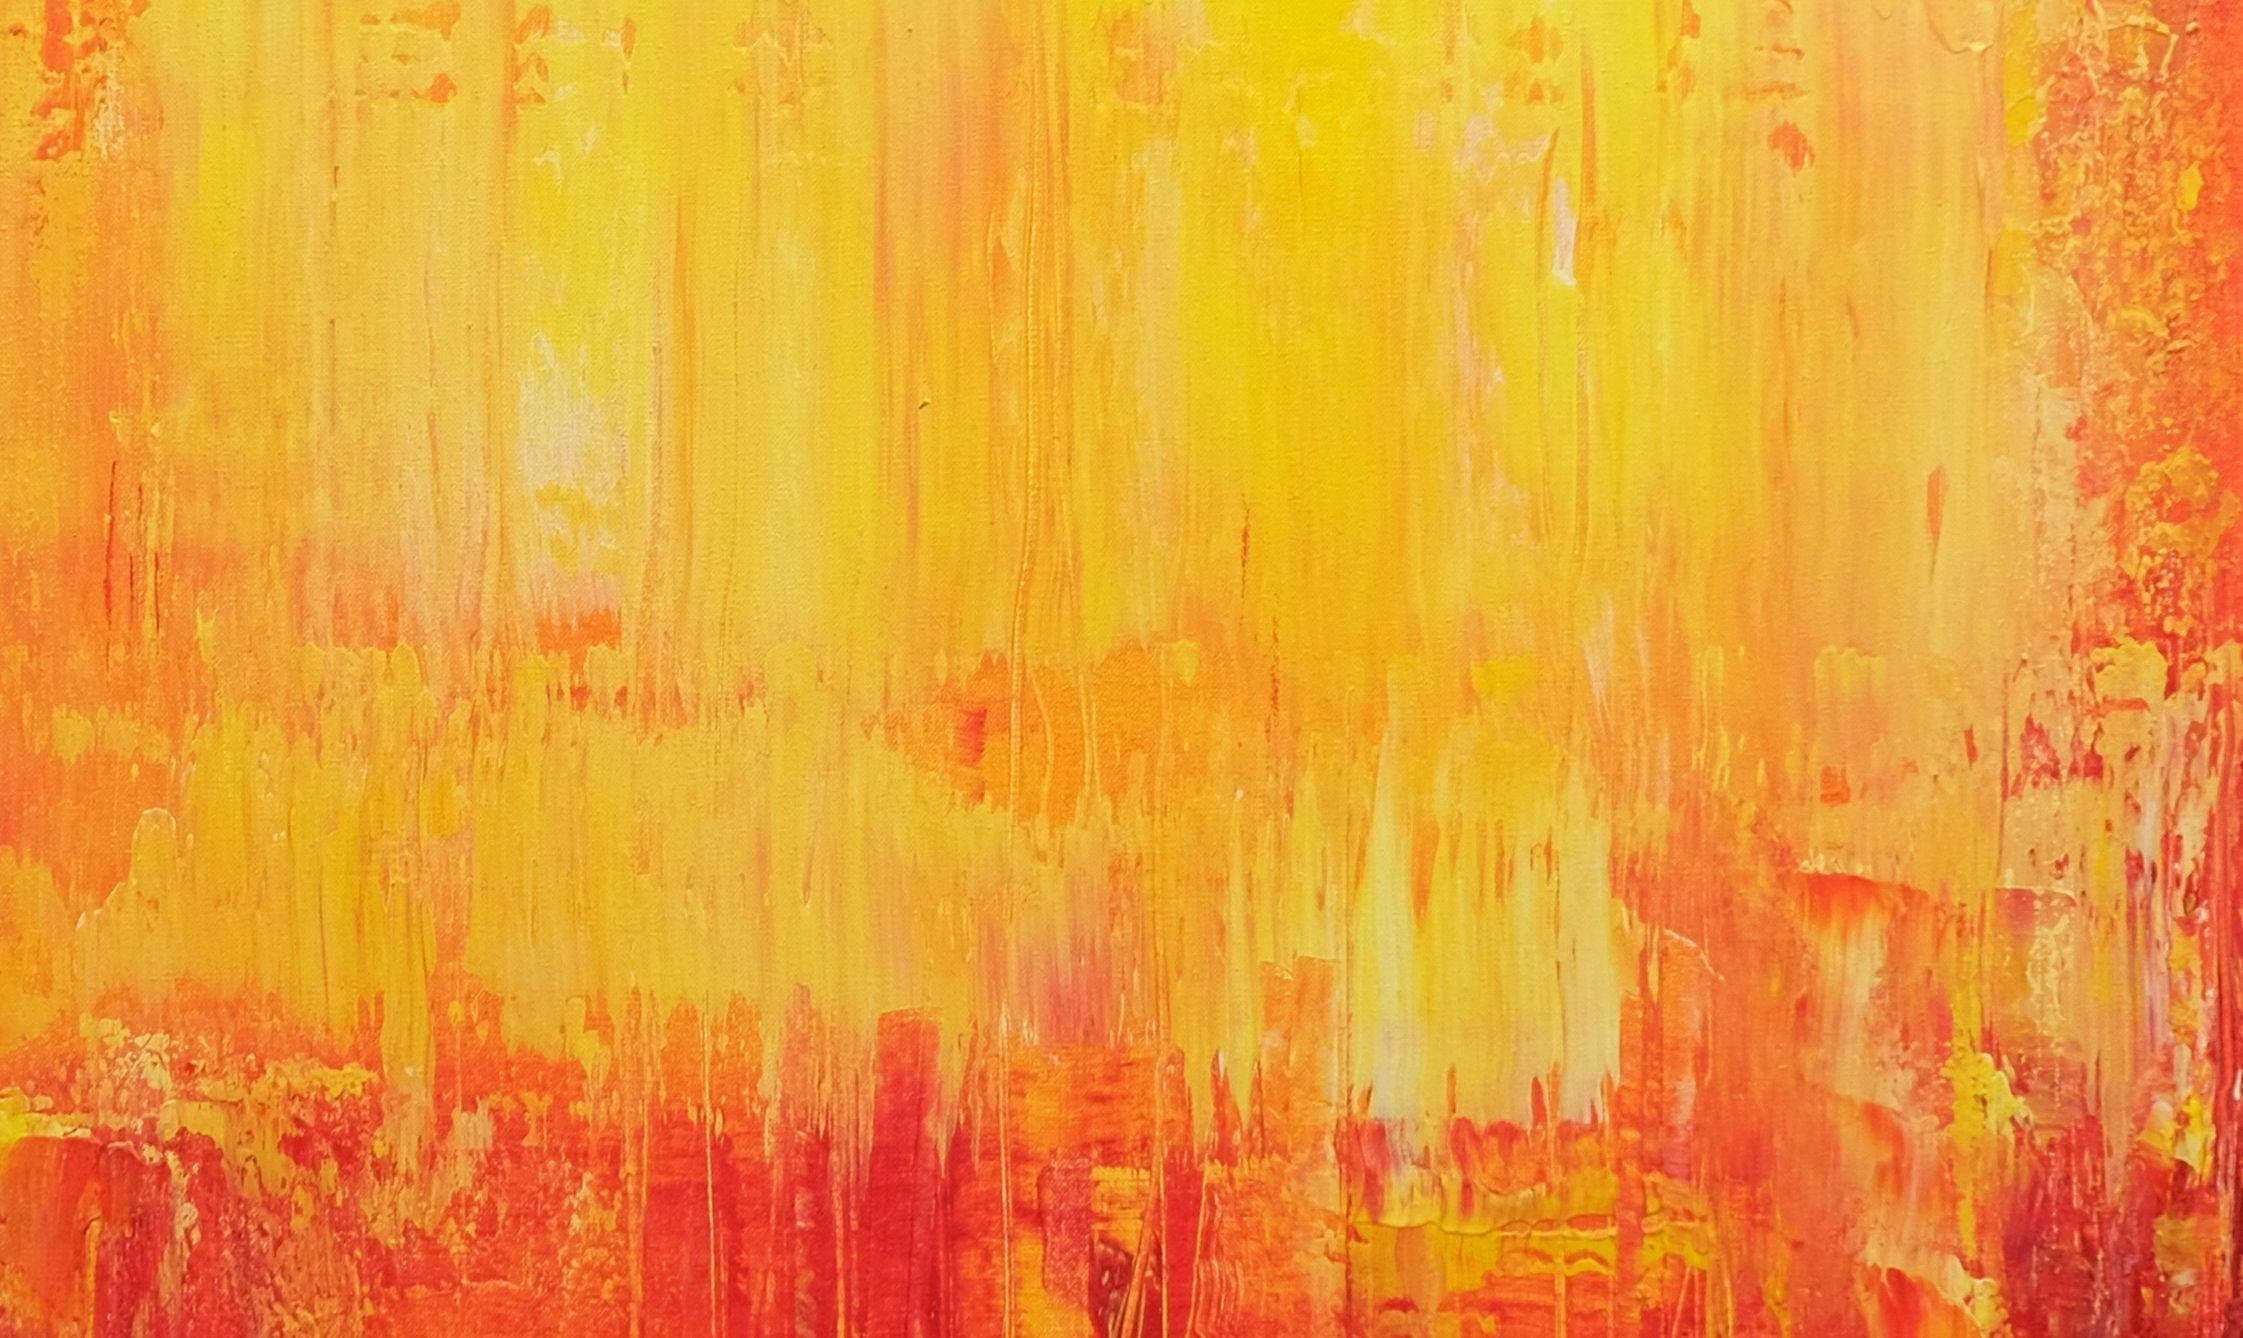 Coucher de soleil d'automne, peinture, acrylique sur toile - Abstrait Painting par Behshad Arjomandi